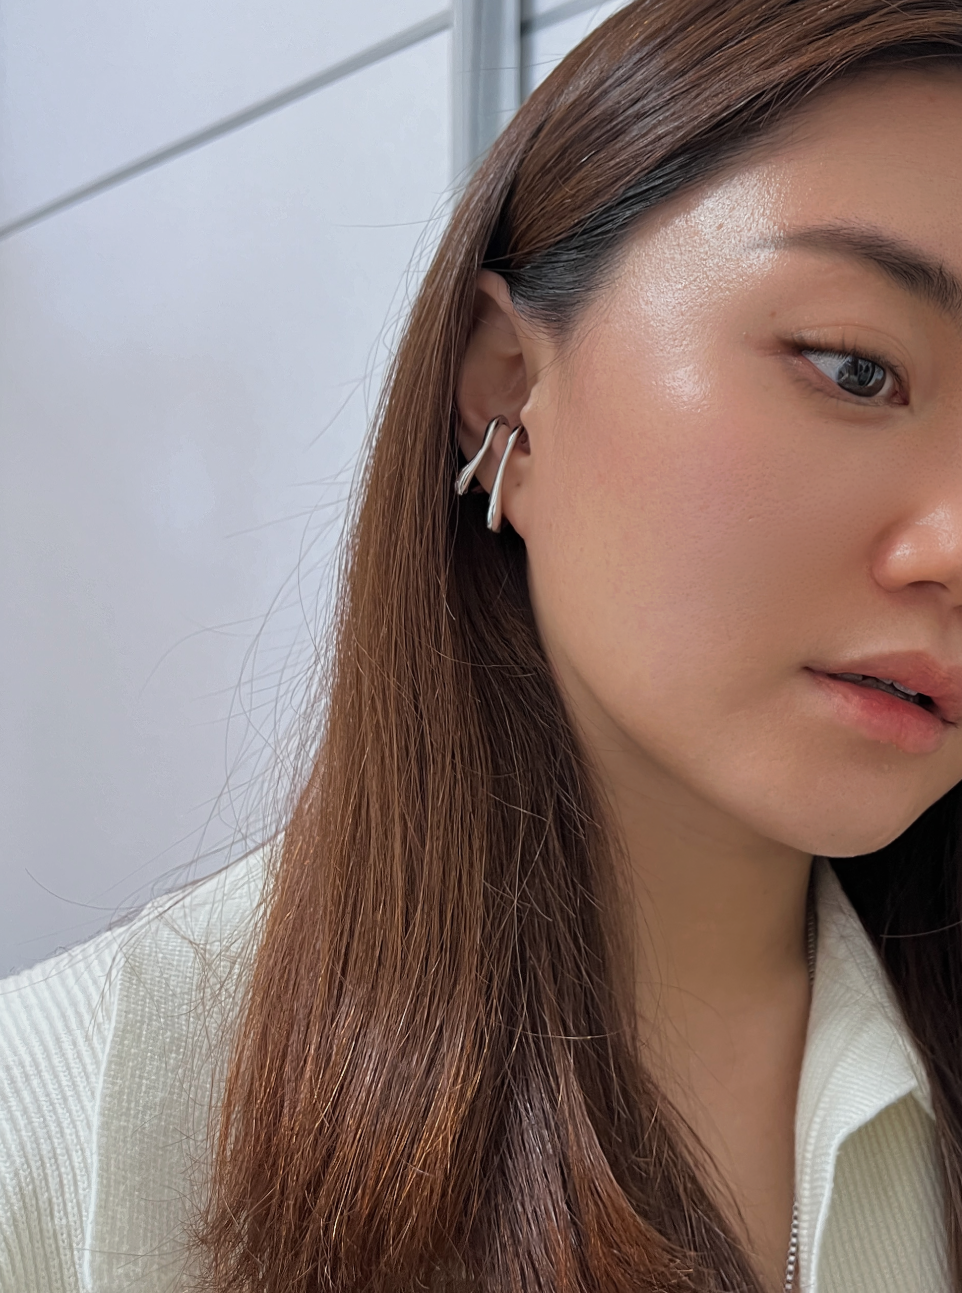 Minimalist Ear Lobe Cuff Earrings, Abstract Ear Cuff, Chunky Ear Cuff, Contemporary Ear Cuff, Gold Lobe Cuff Earrings, Non Pierced Earrings